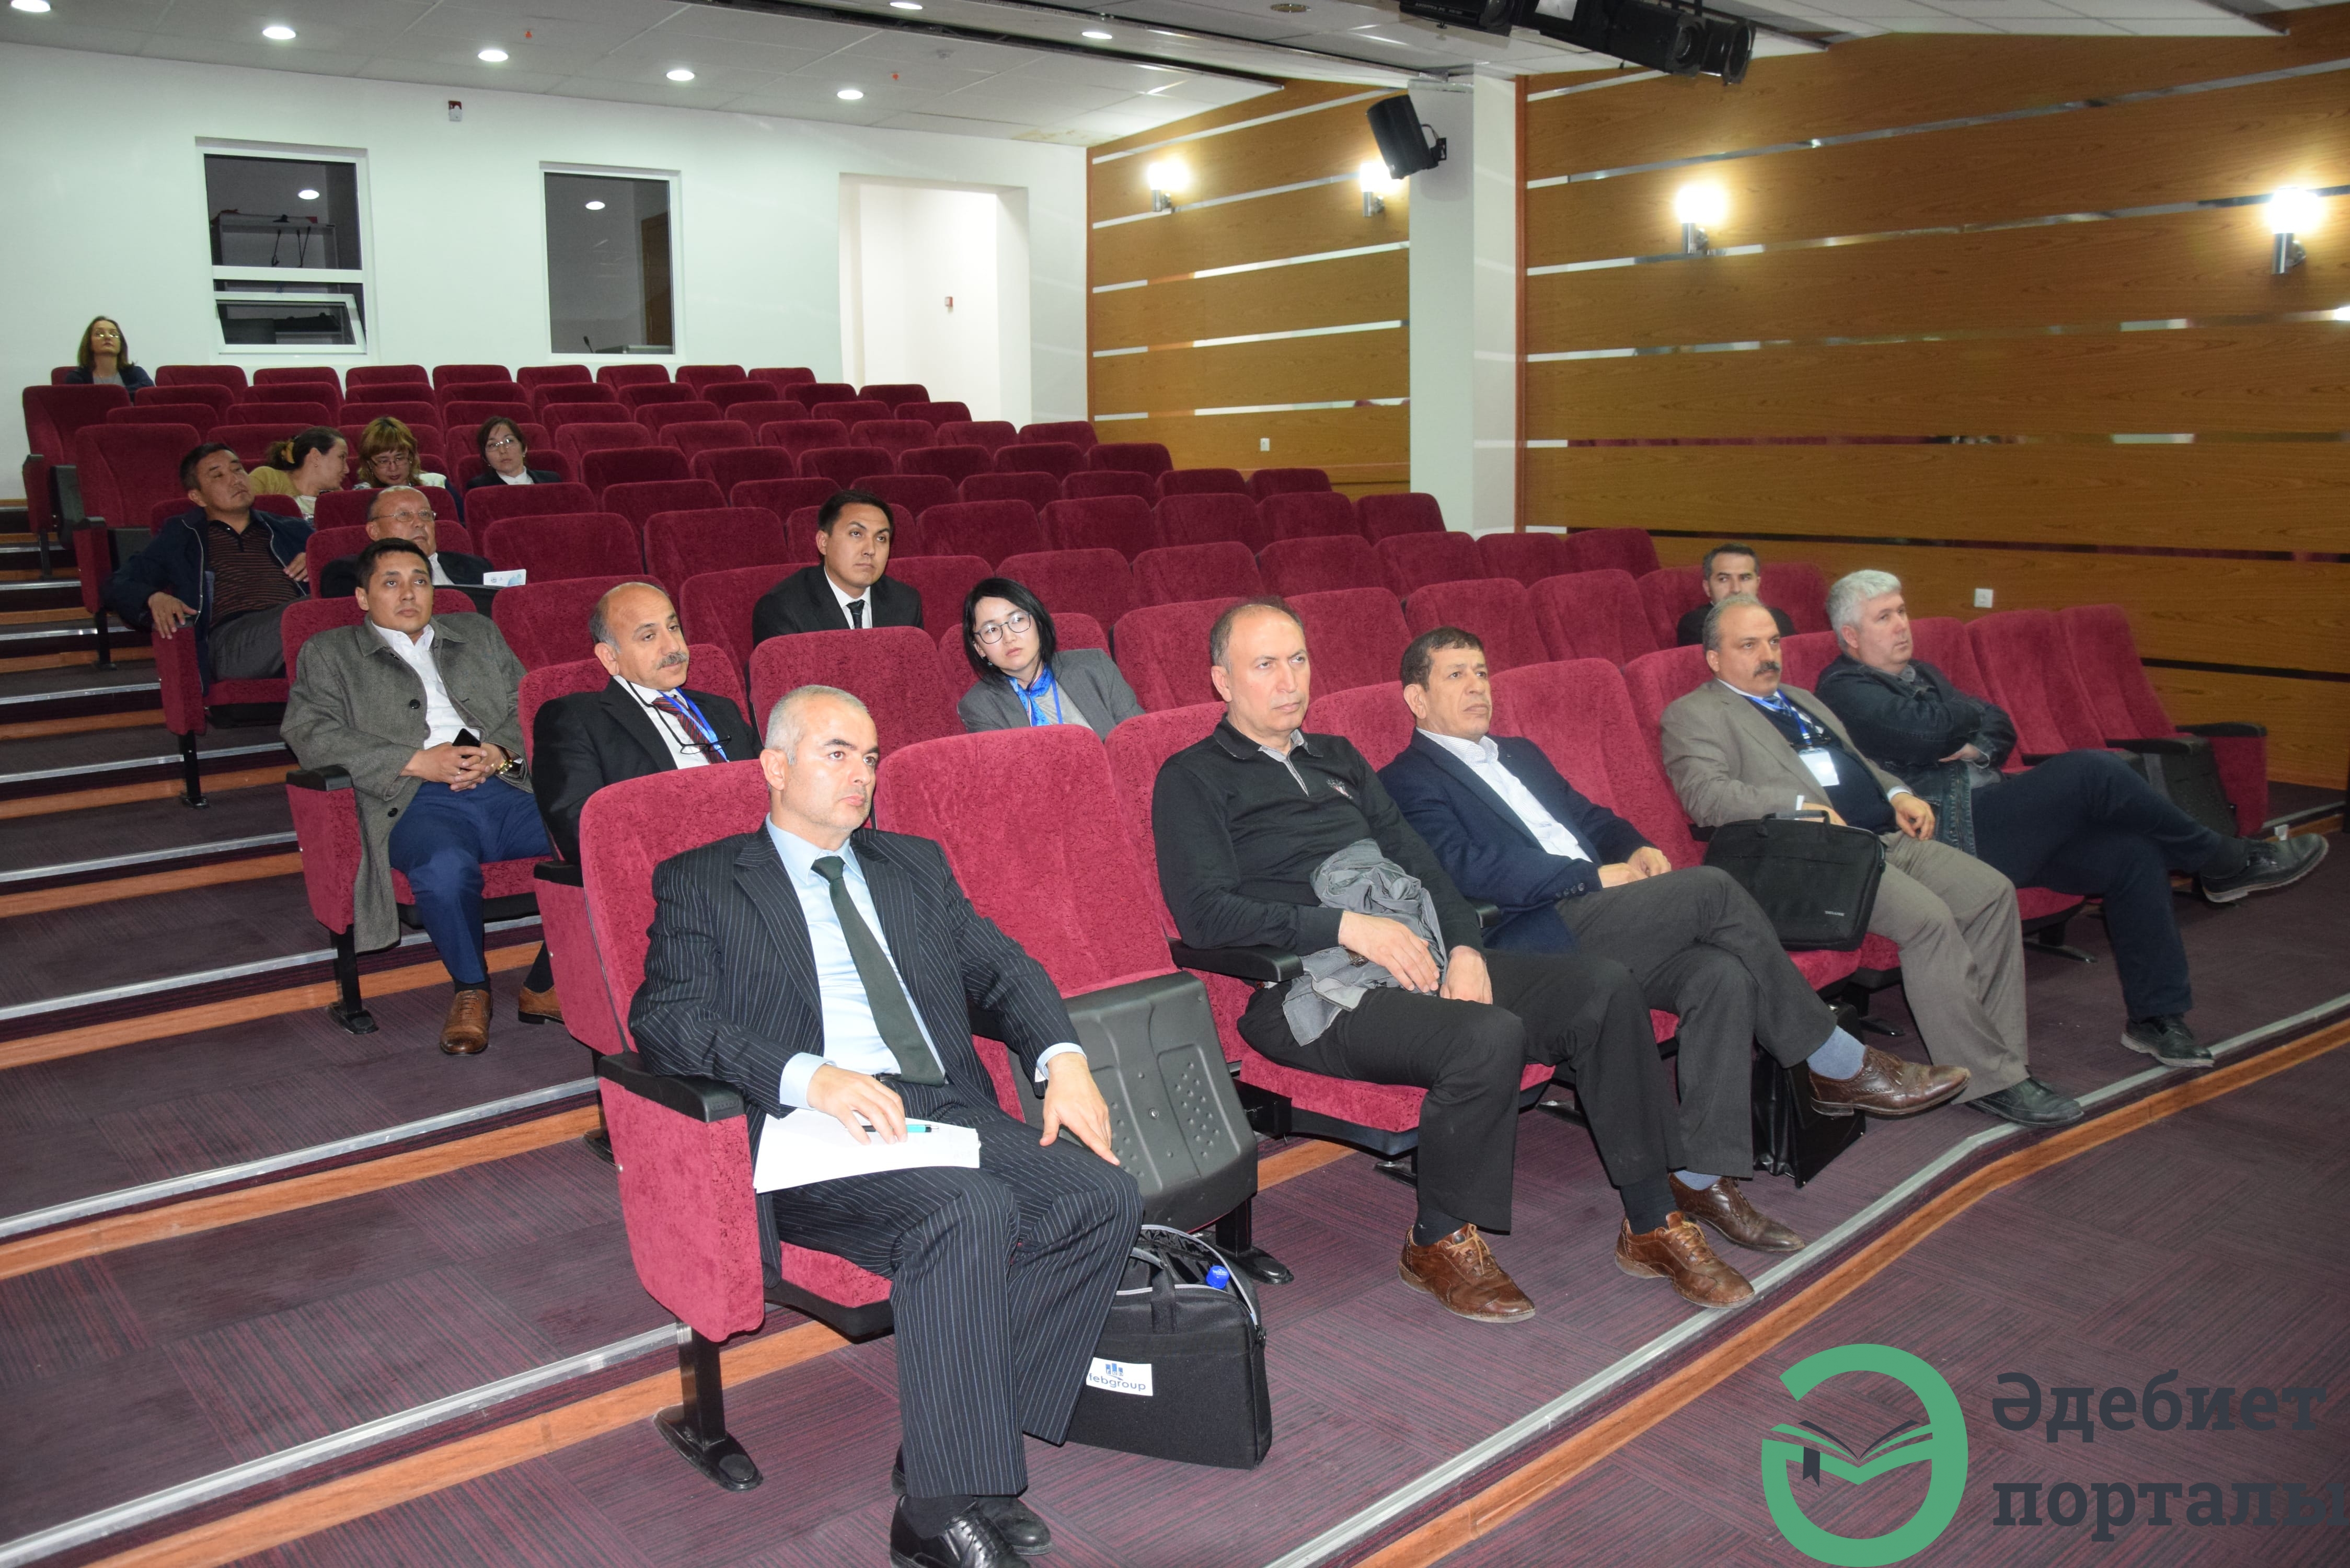 Халықаралық әлеуметтік ғылымдар конгресі: ІІІ Түркістан форумы  - фото 23 - adebiportal.kz